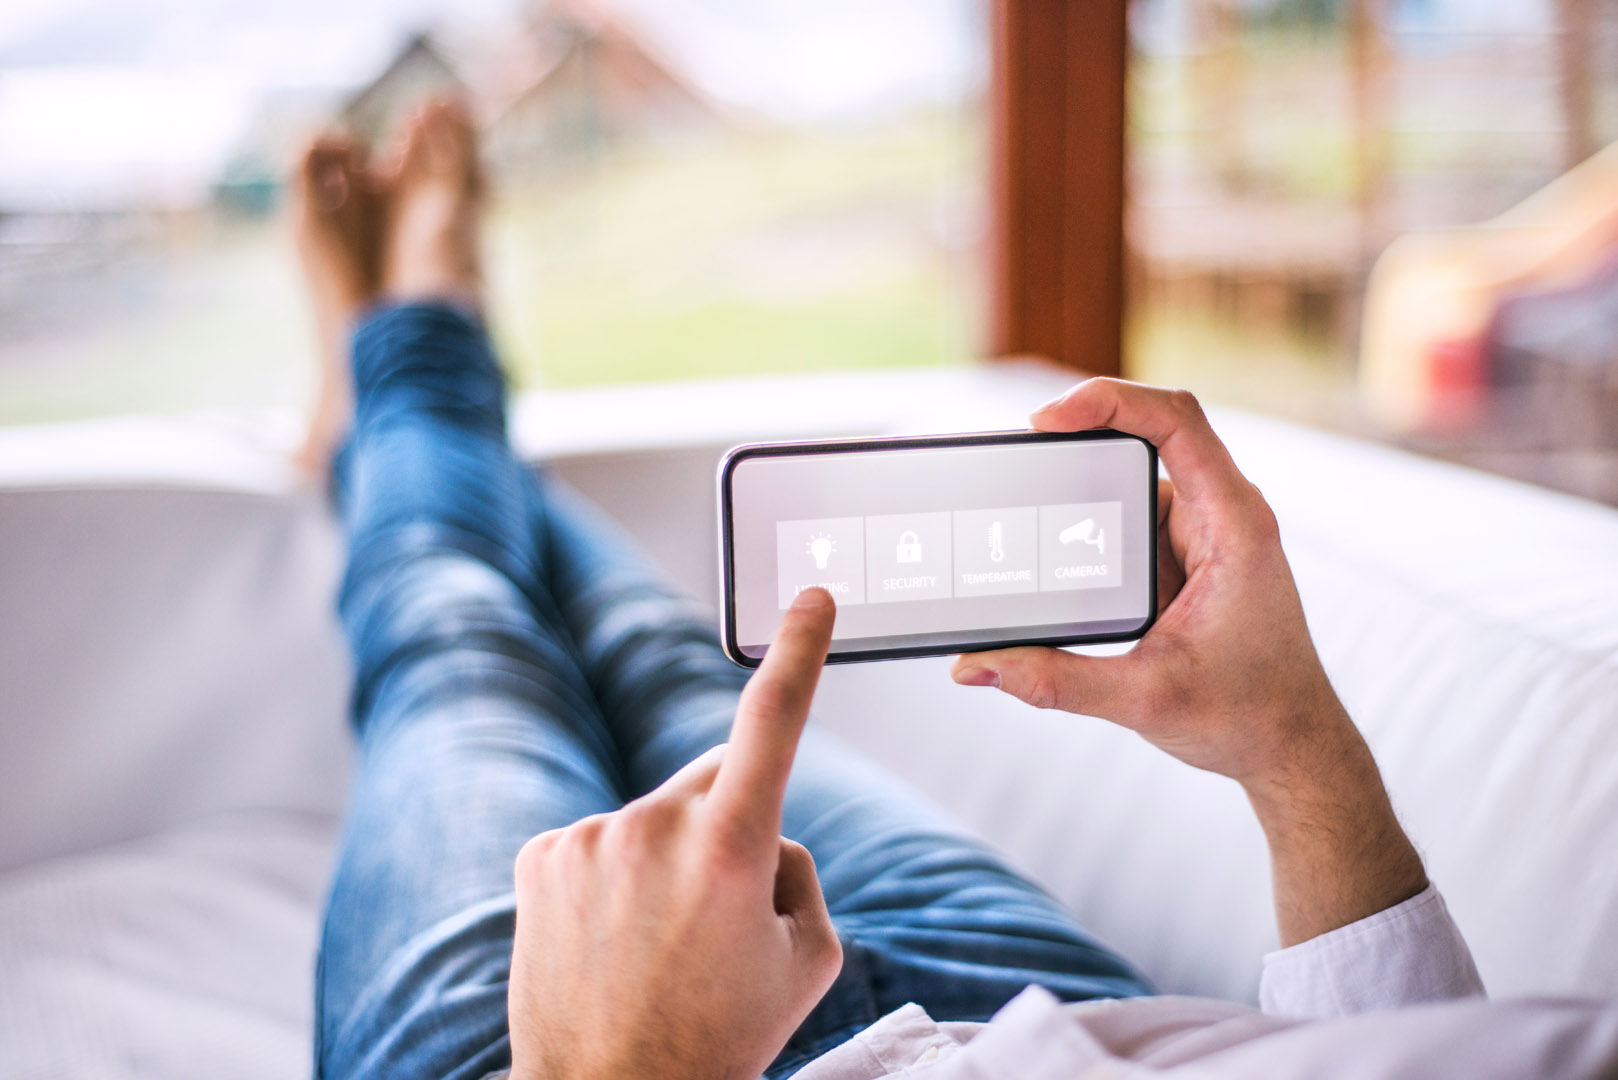 Otthonában pihenő férfi kezében okostelefonjával applikáción keresztül irányítja okosotthonának világítás funkcióját.